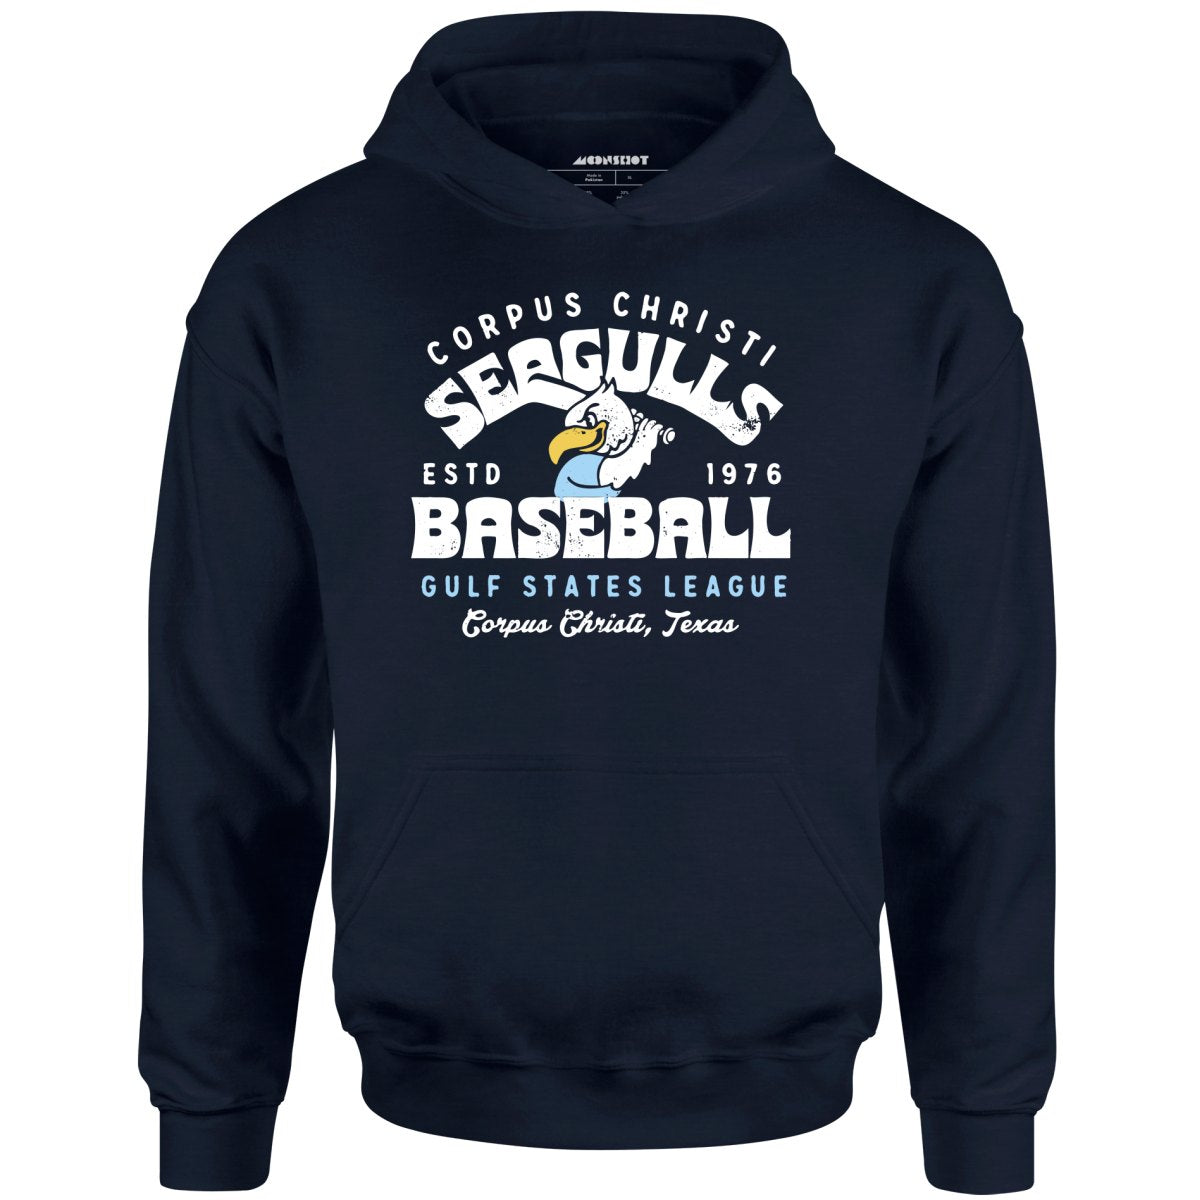 Corpus Christi Seagulls - Texas - Vintage Defunct Baseball Teams - Unisex Hoodie